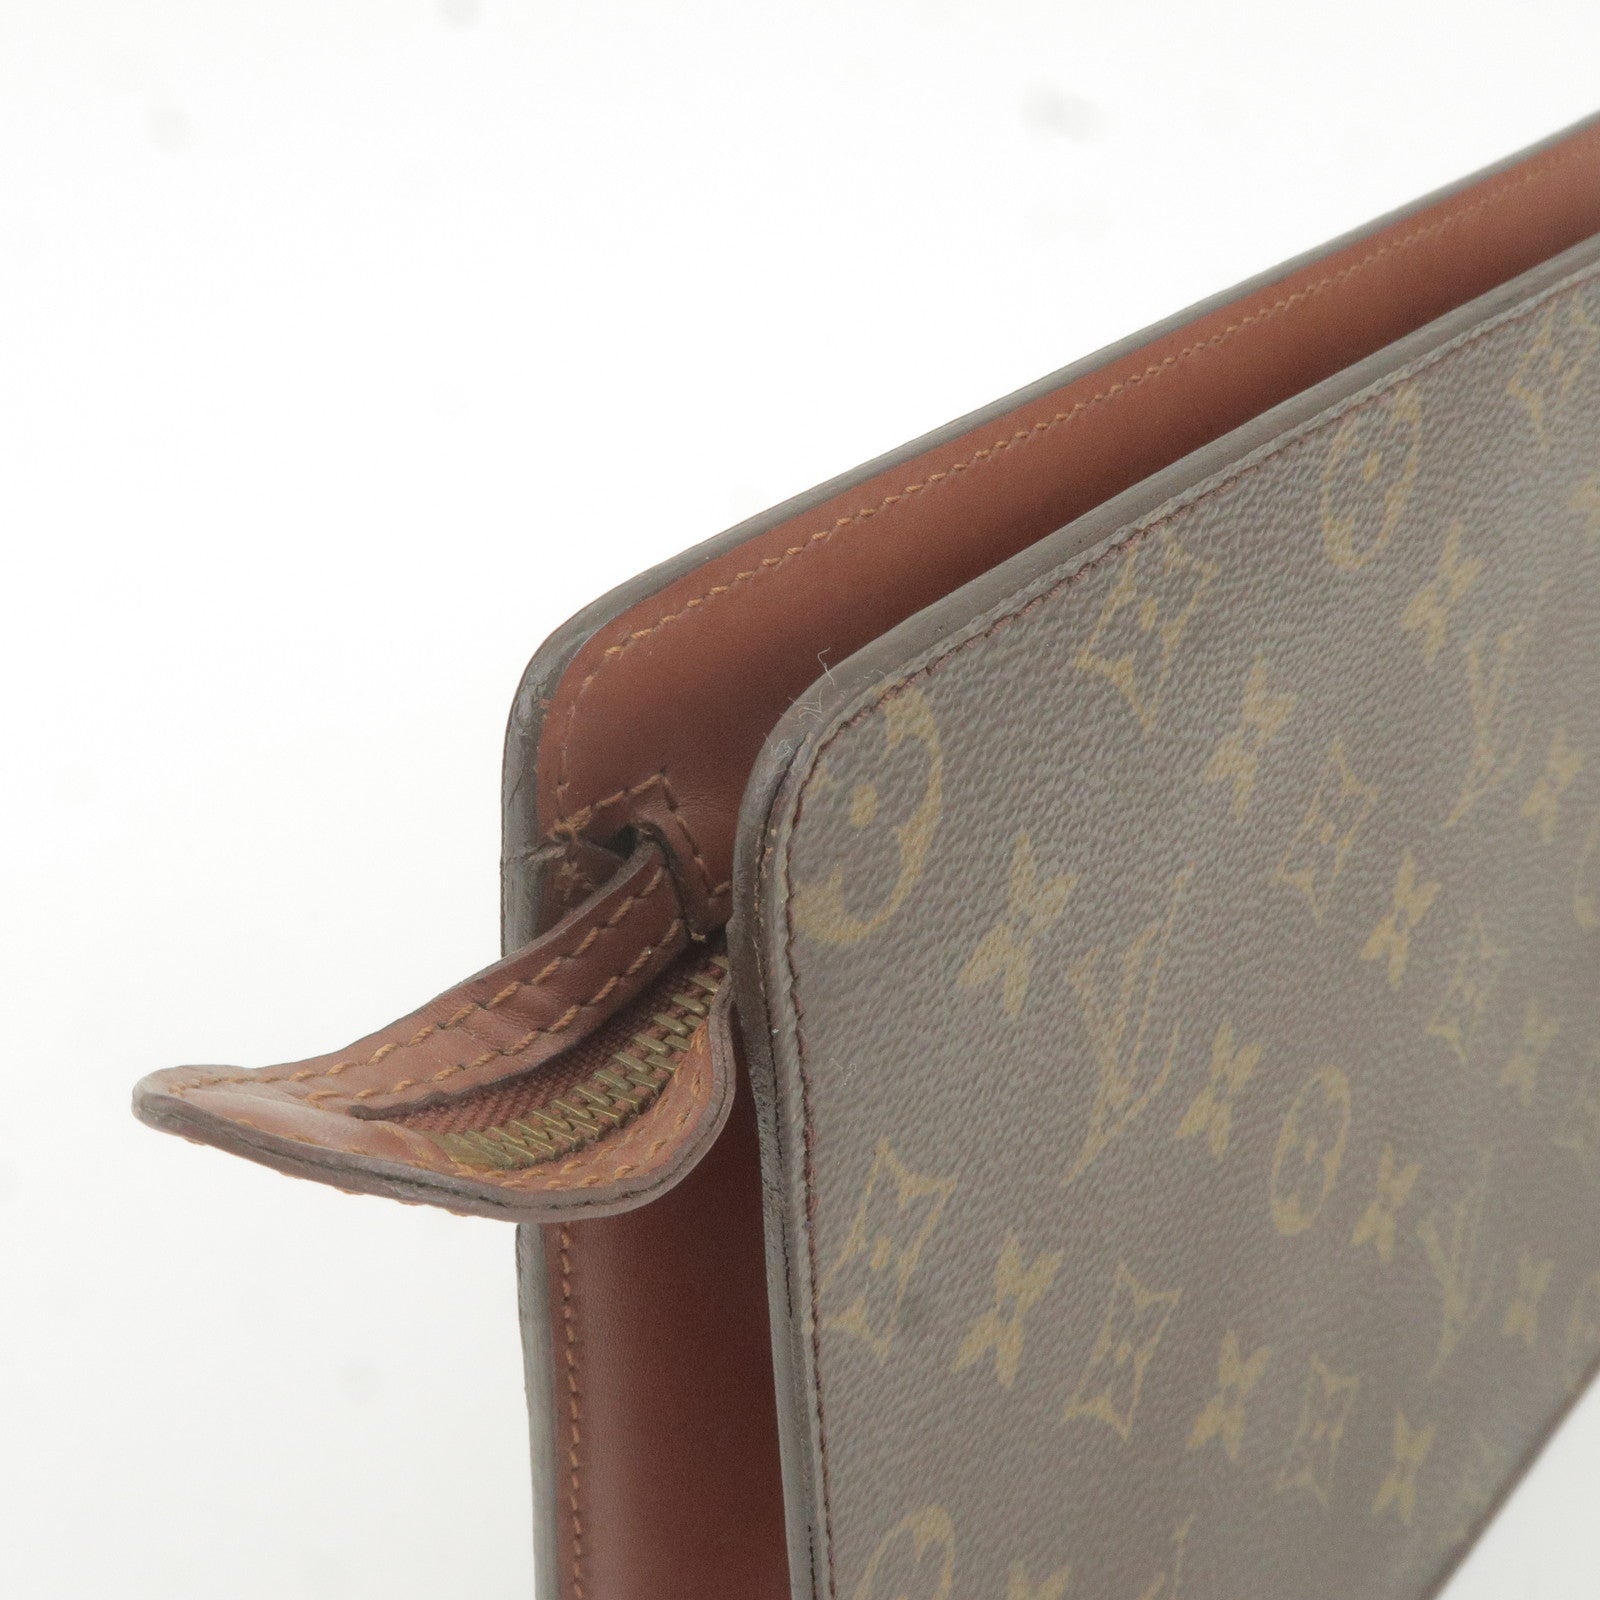 ep_vintage luxury Store - M51795 – dct - Vuitton - Clutch - Louis